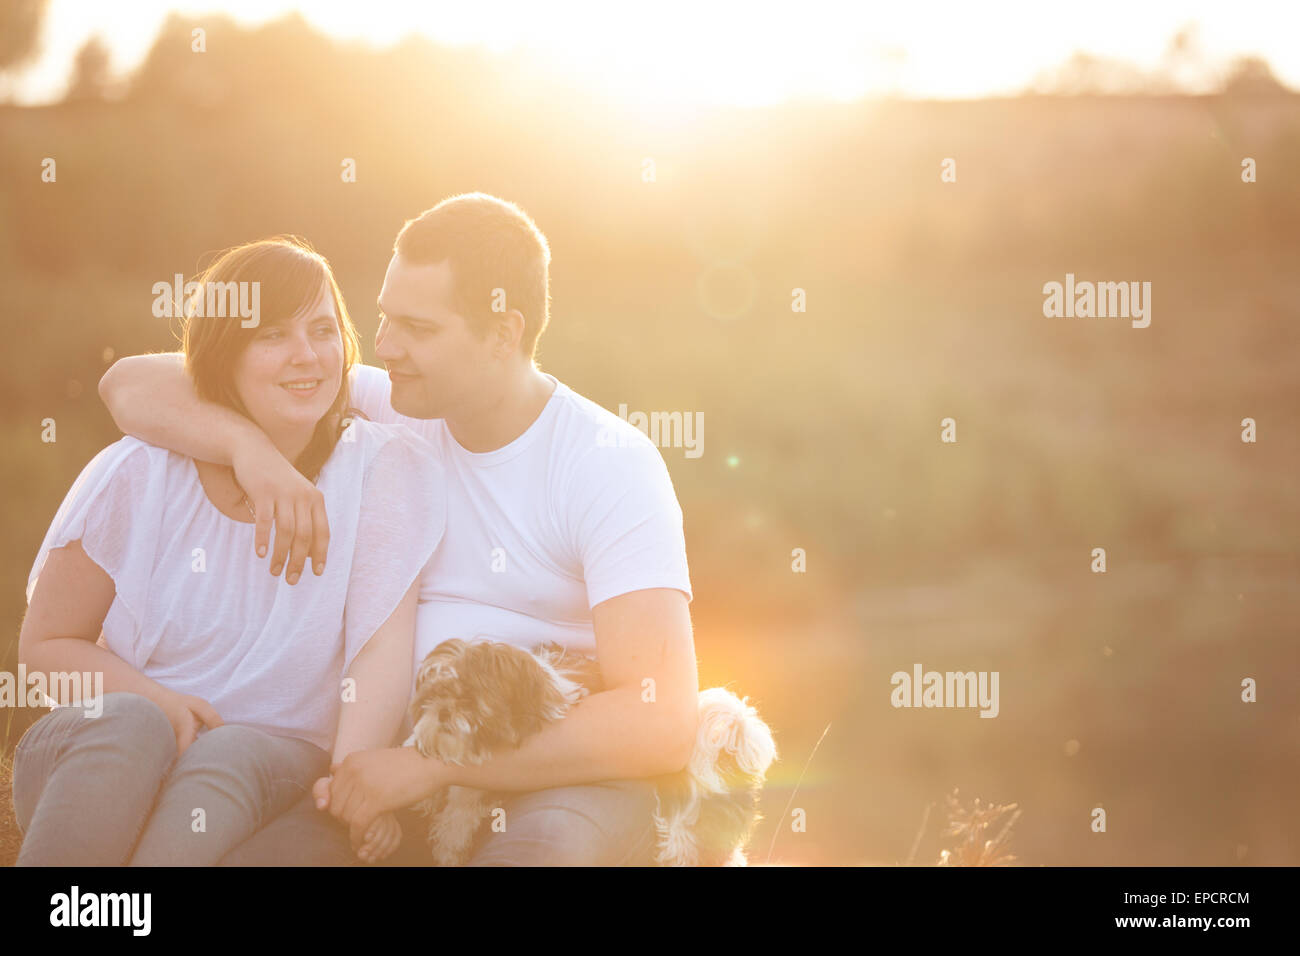 Coppia giovane sta avendo un momento romantico in natura Foto Stock